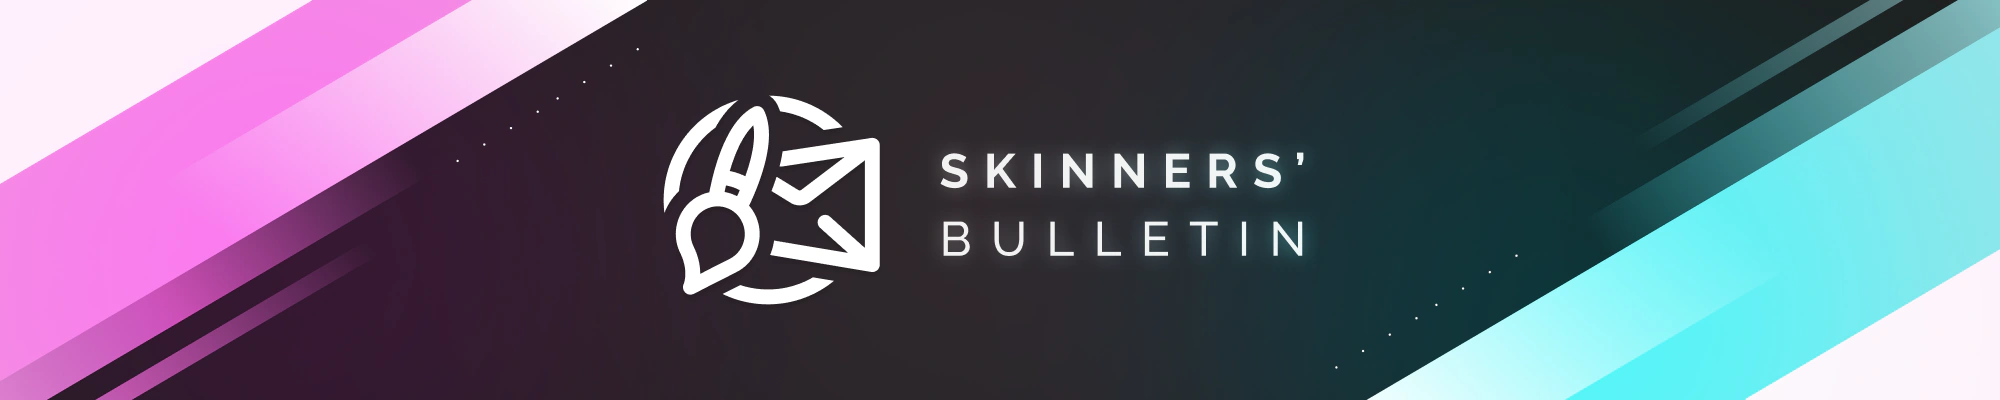 Skinners' Bulletin banner